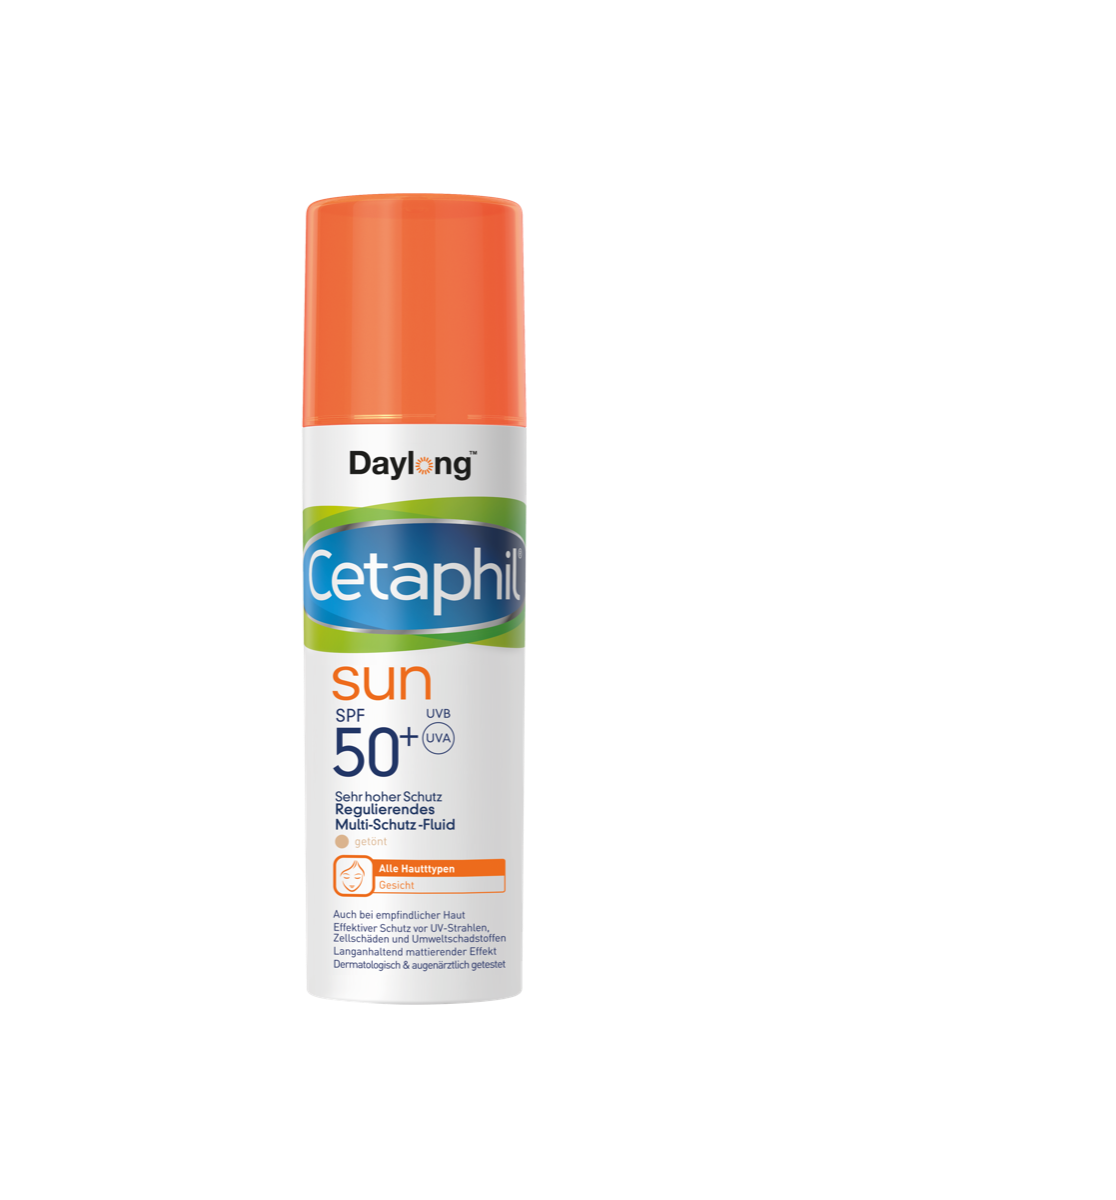 CETAPHIL Sun Daylong™ Regulierendes Multi-Schutz-Fluid Gesicht SPF50+